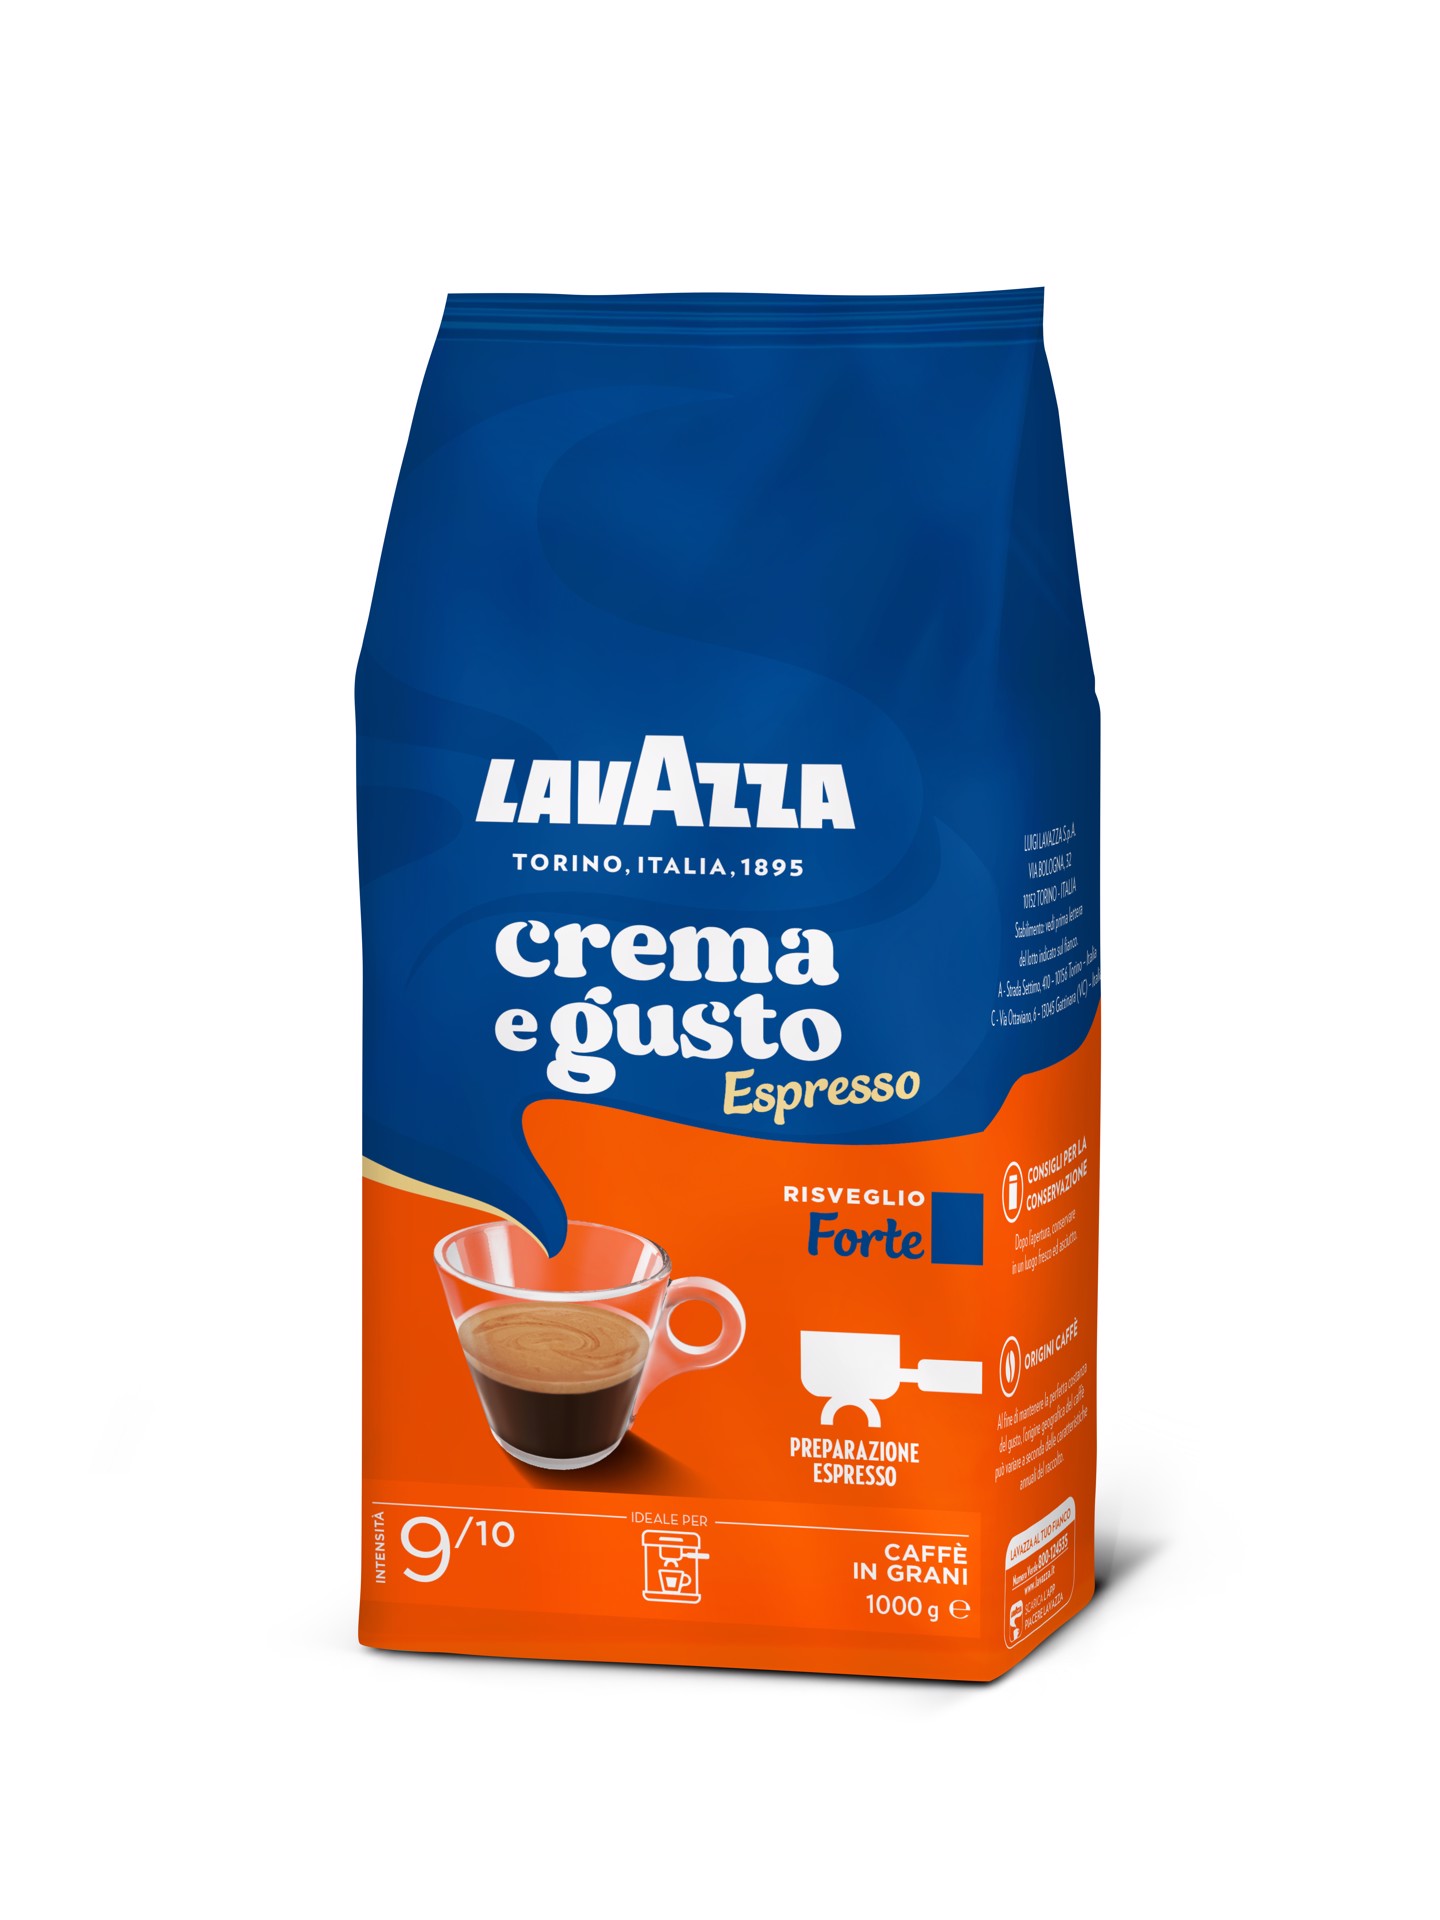 https://www.e-stayon.com/images/thumbs/0255446_lavazza-crema-e-gusto-forte-espresso-grani-1kg.jpeg